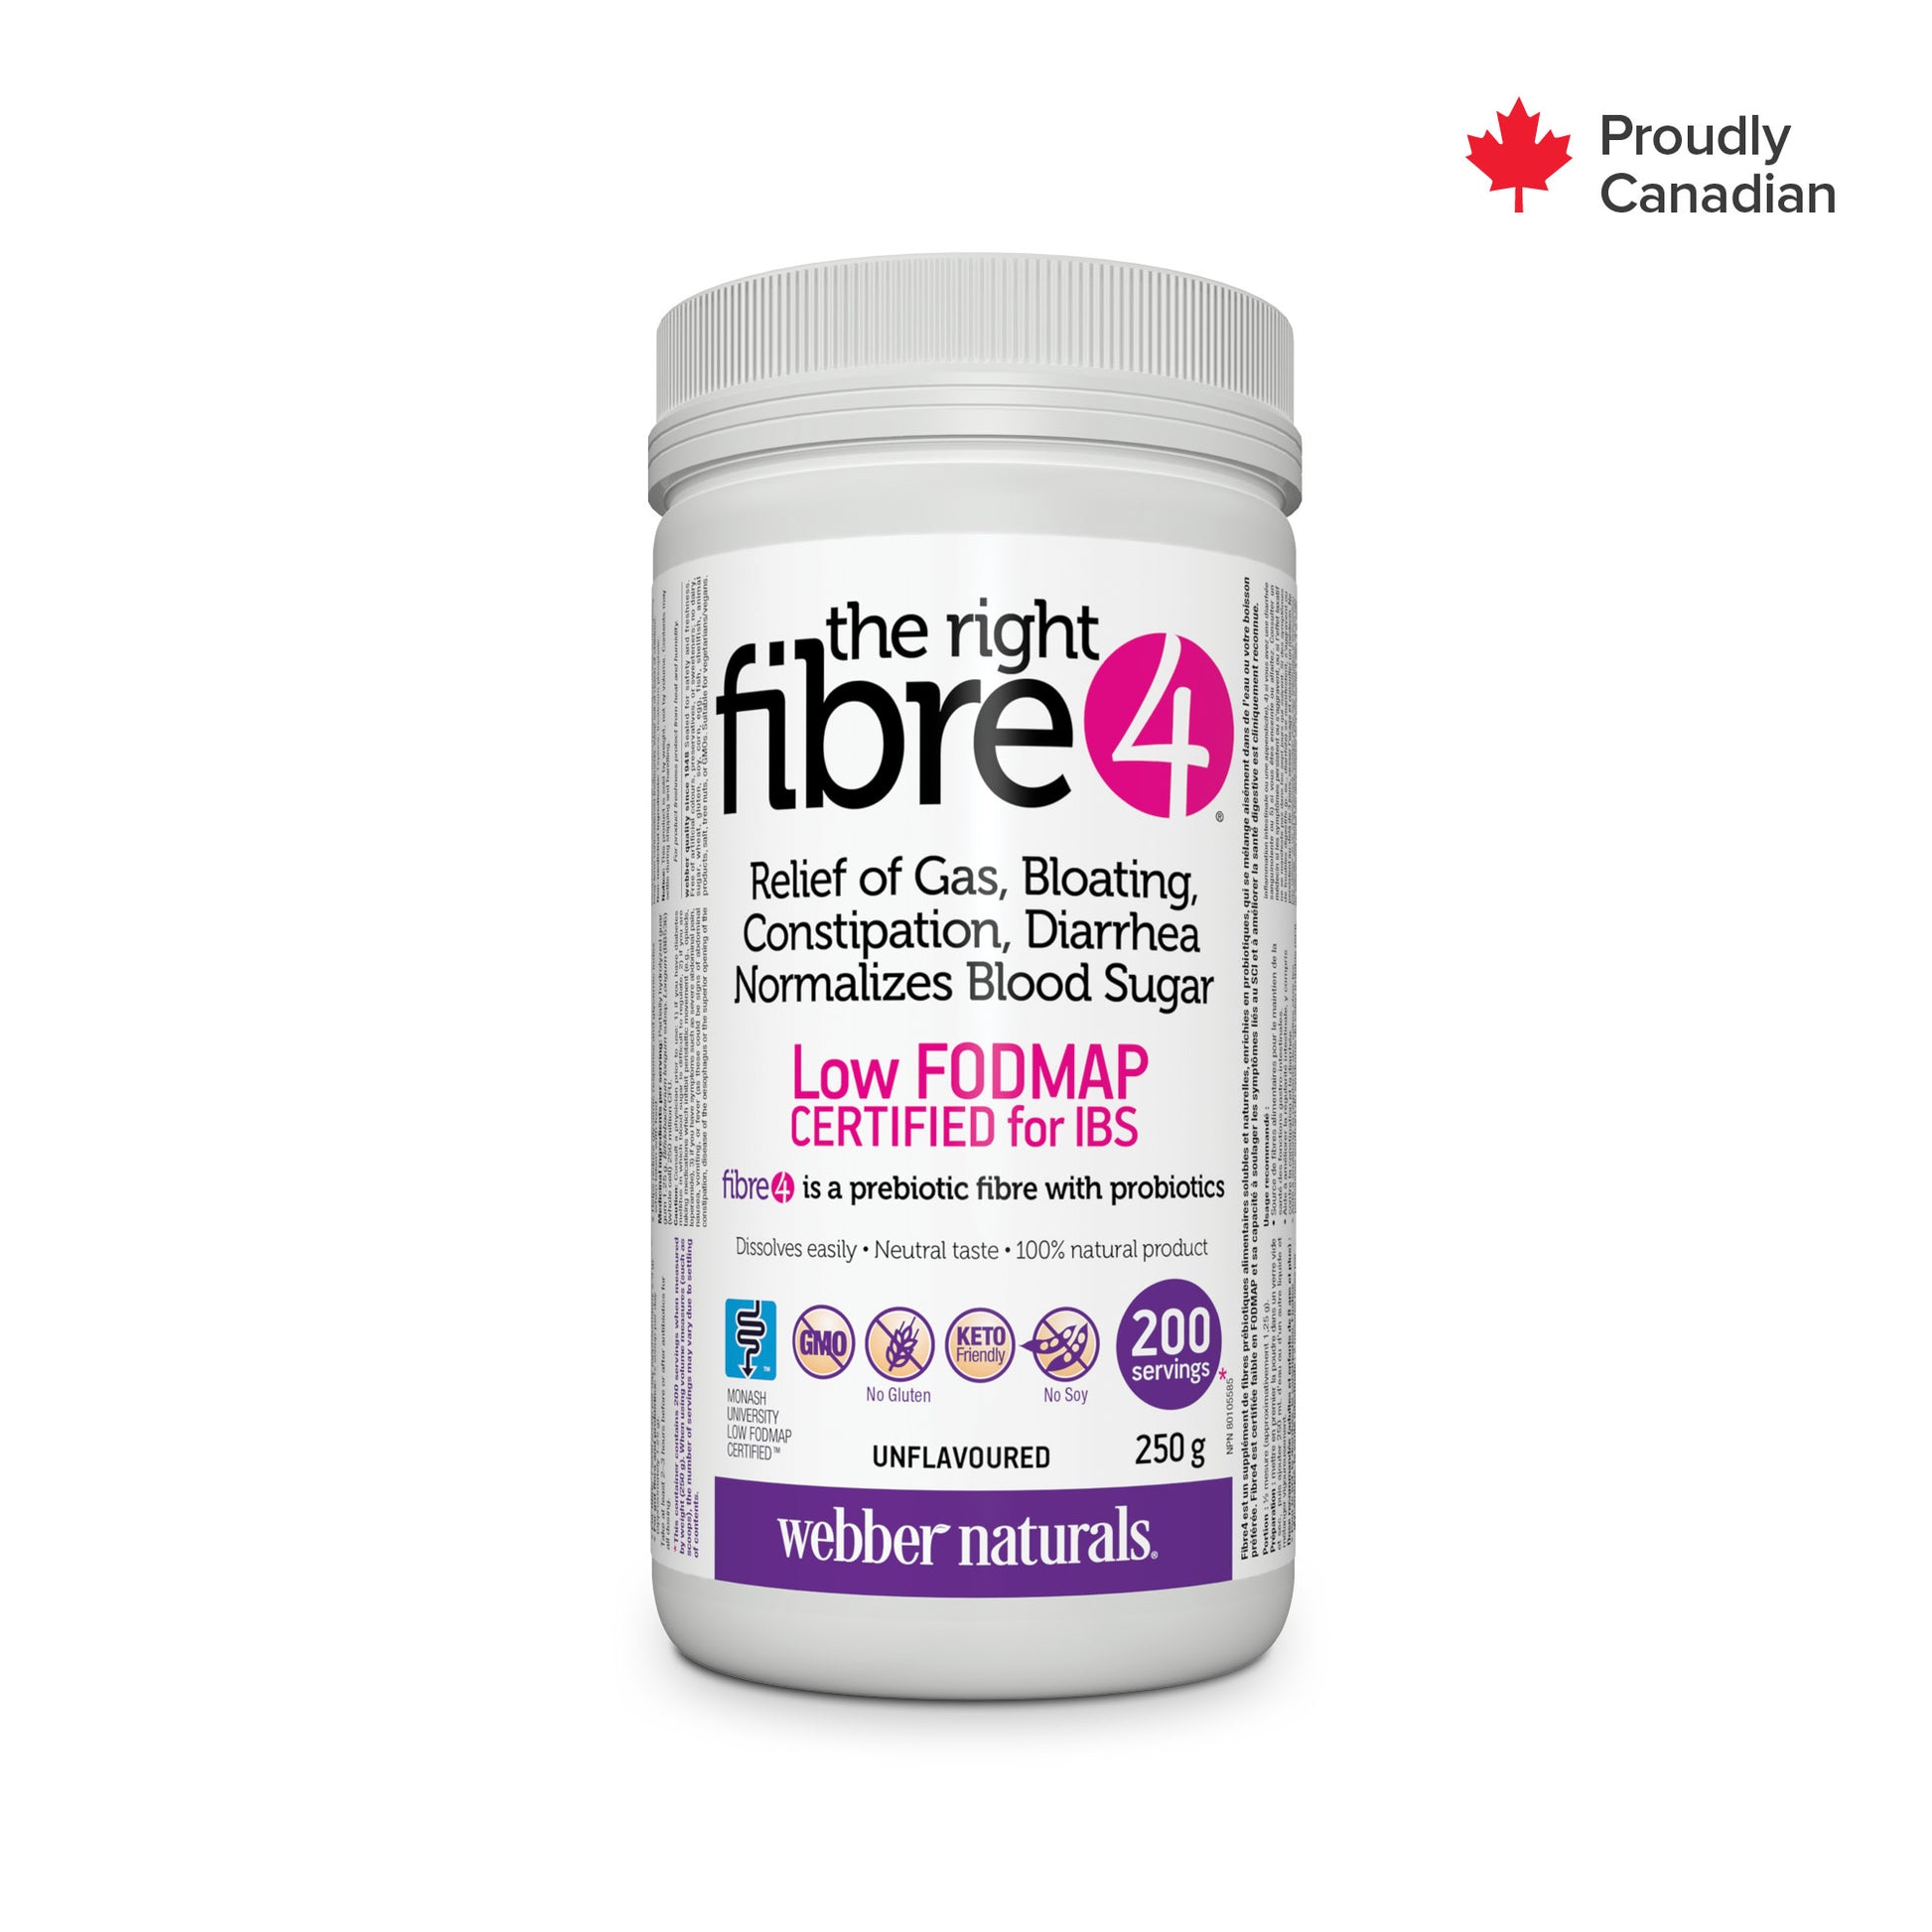 The right fibre4 for Webber Naturals|v|hi-res|WN5554